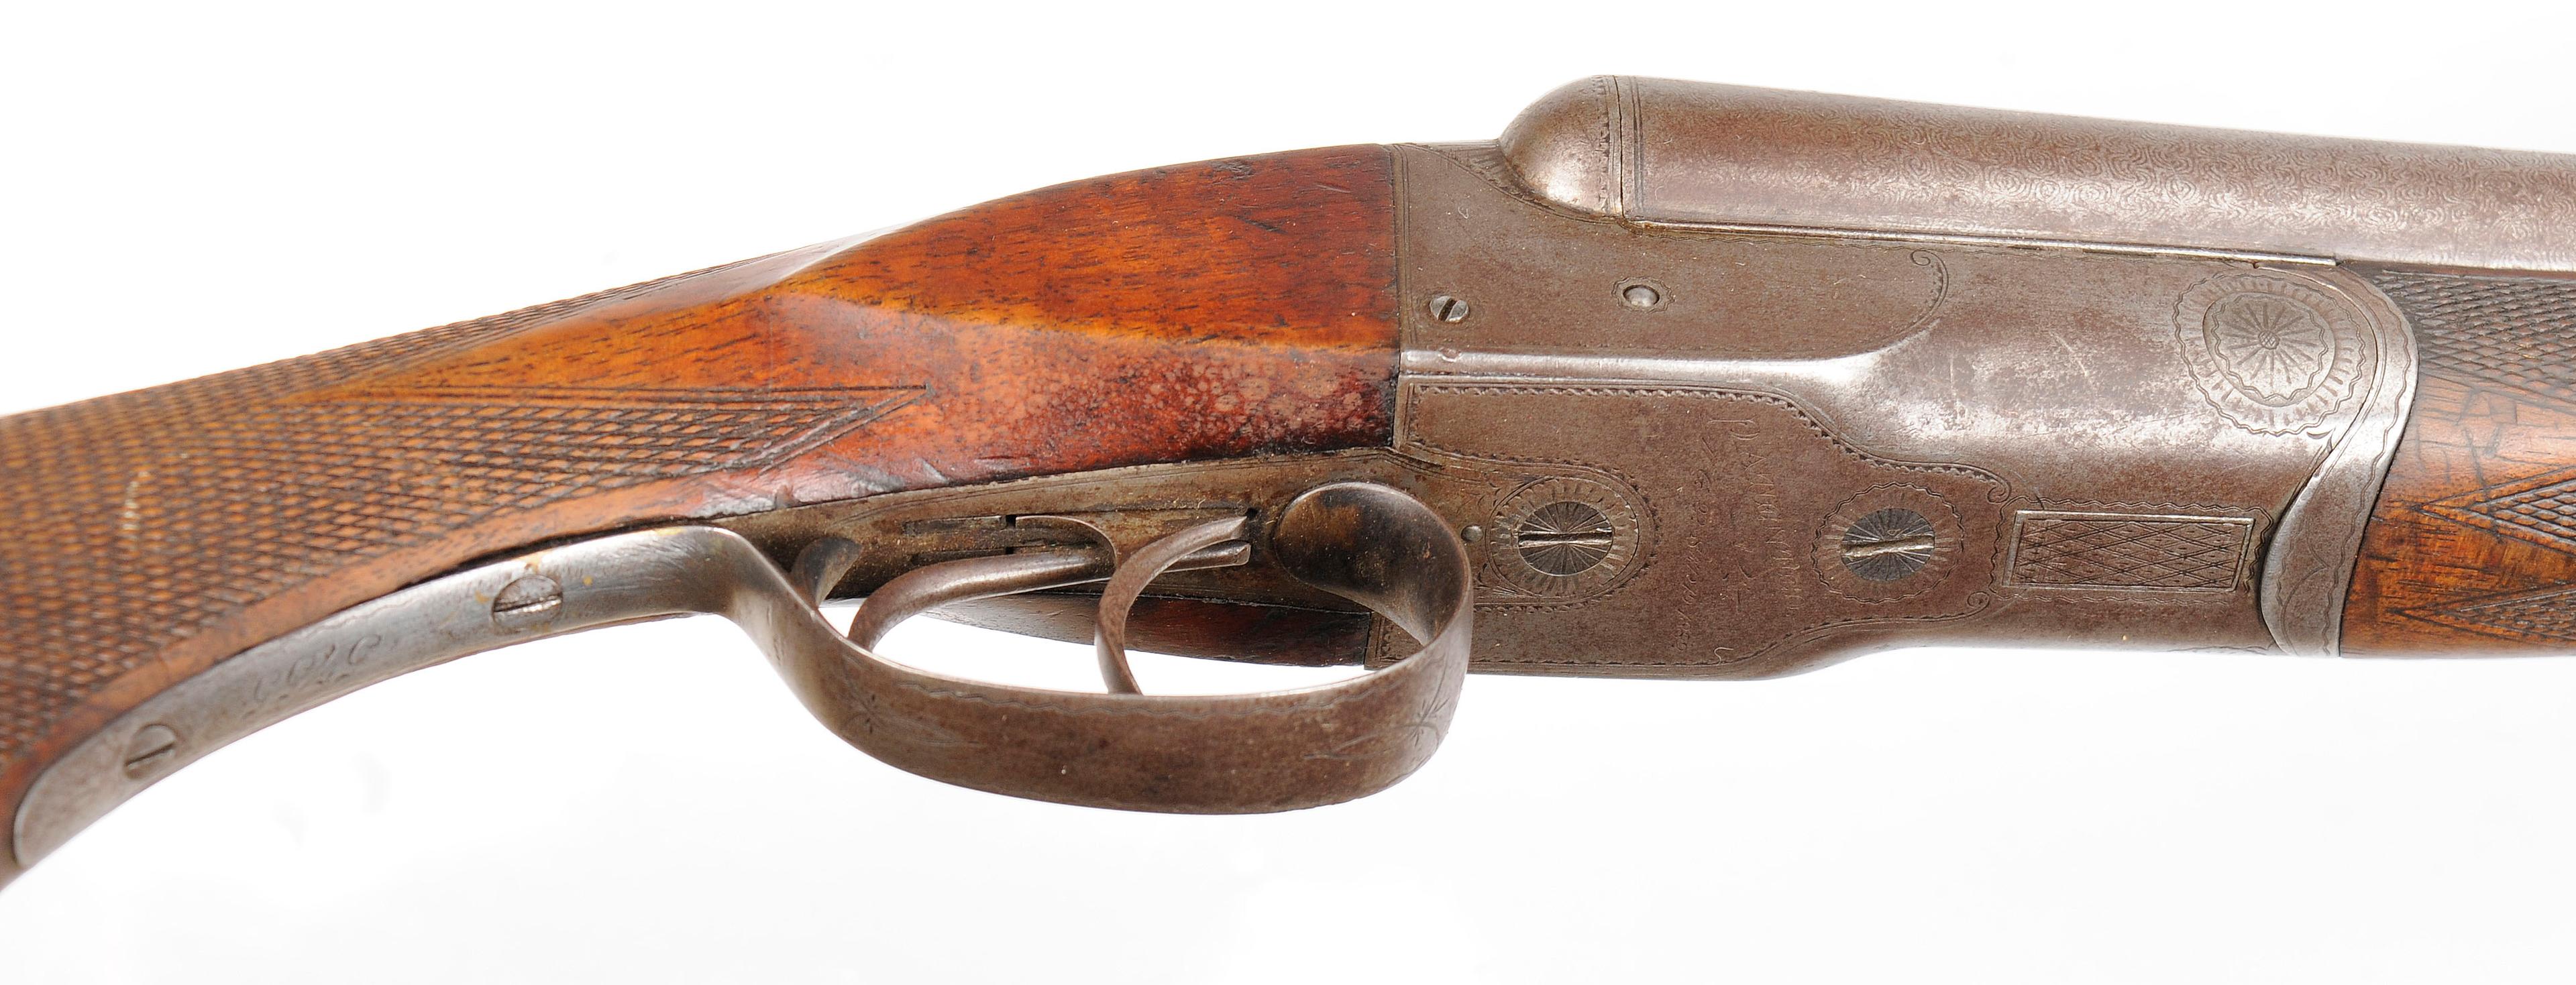 Colt Model 1883 12 Ga Double Barrel Shotgun - no FFL needed (SHH1)